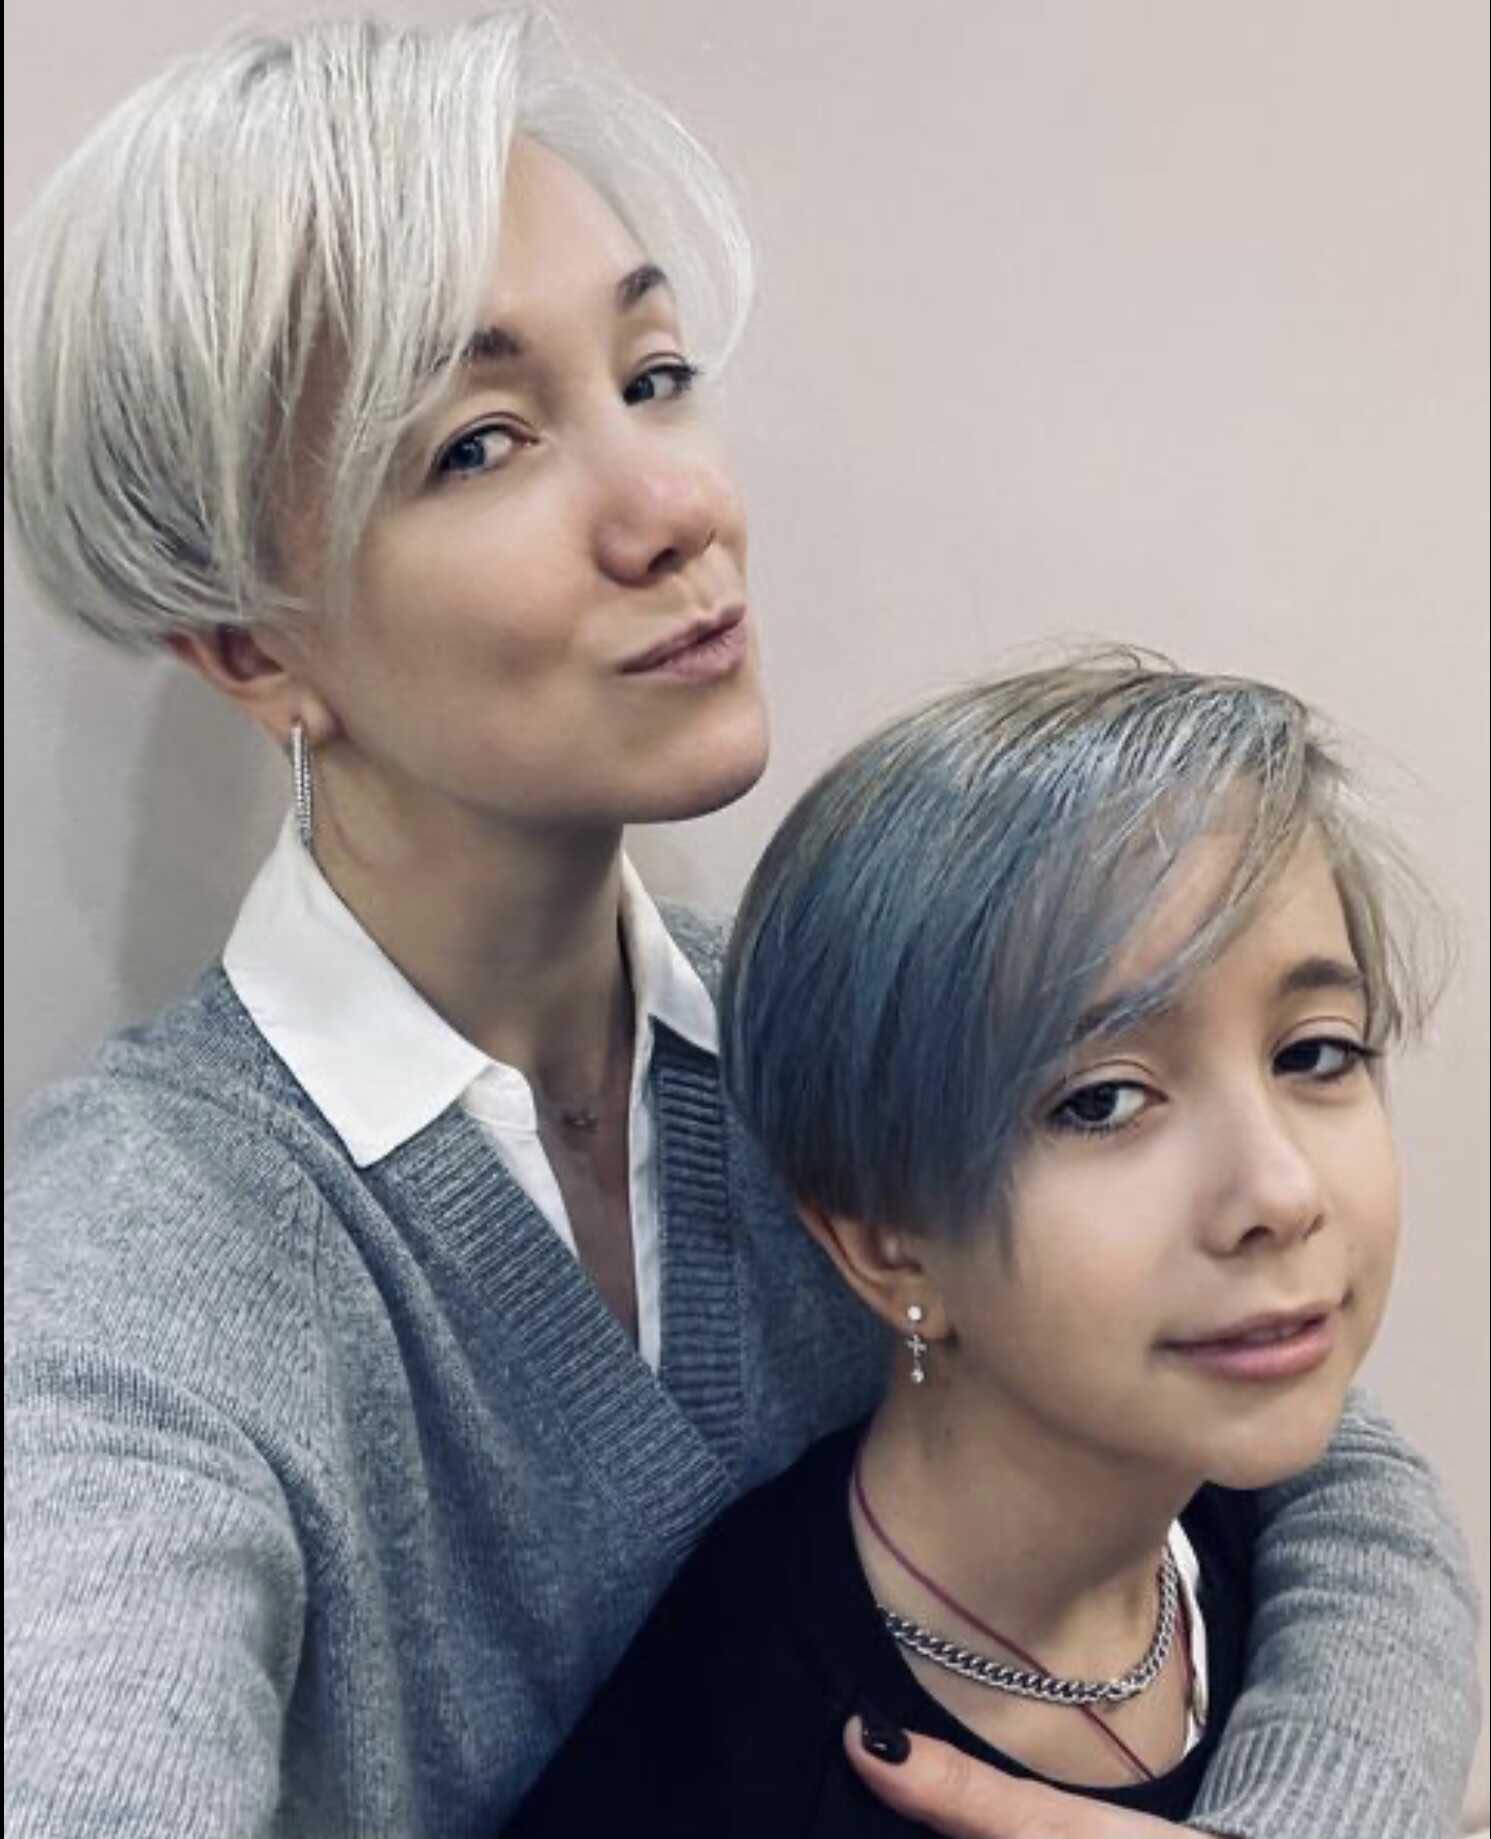 «Не рановато?»: подписчики осудили Дарью Мороз за макияж и необычный цвет волос дочери